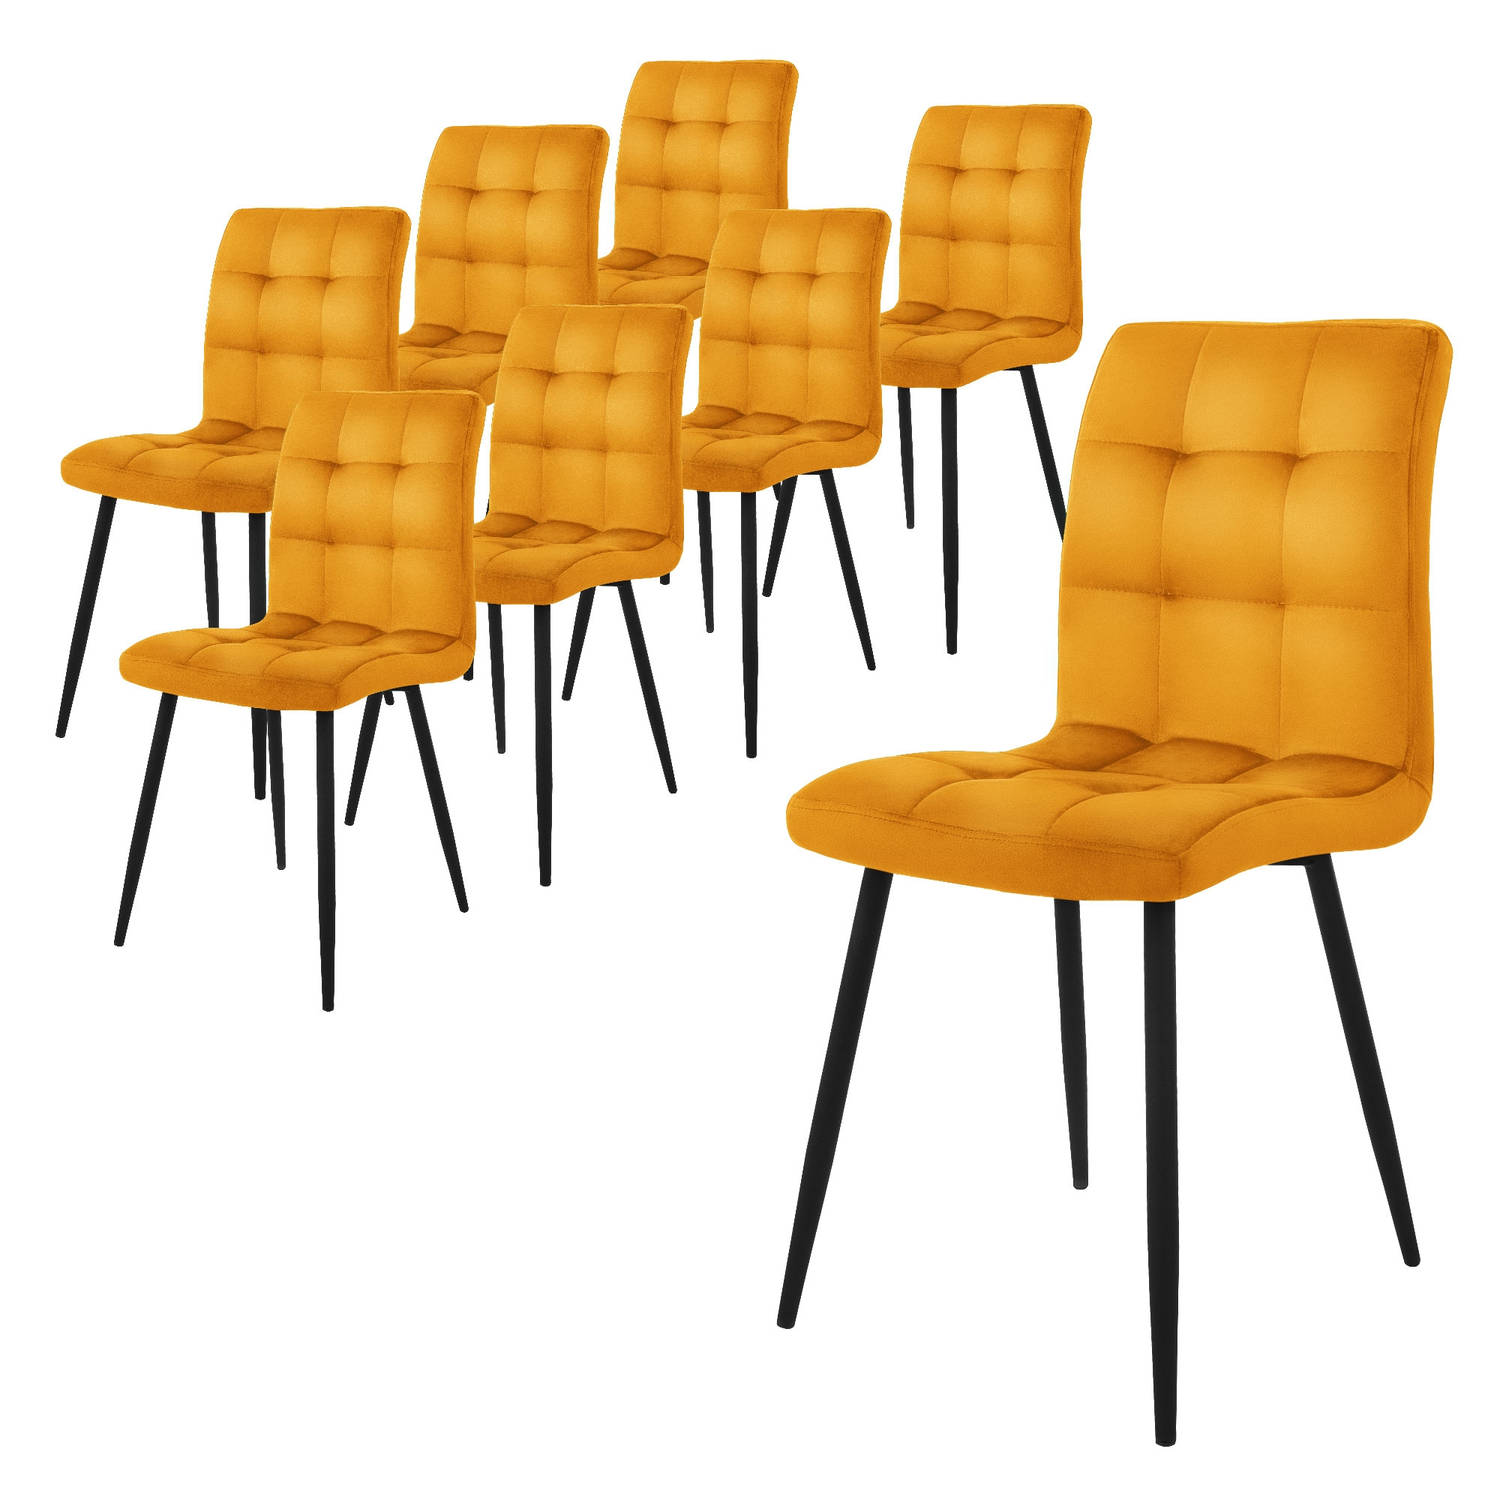 ML-Design eetkamerstoelen set van 8, mosterdgeel, keukenstoel met fluwelen bekleding, woonkamerstoel met rugleuning, gestoffeerde stoel met metalen poten, ergonomische stoel voor e